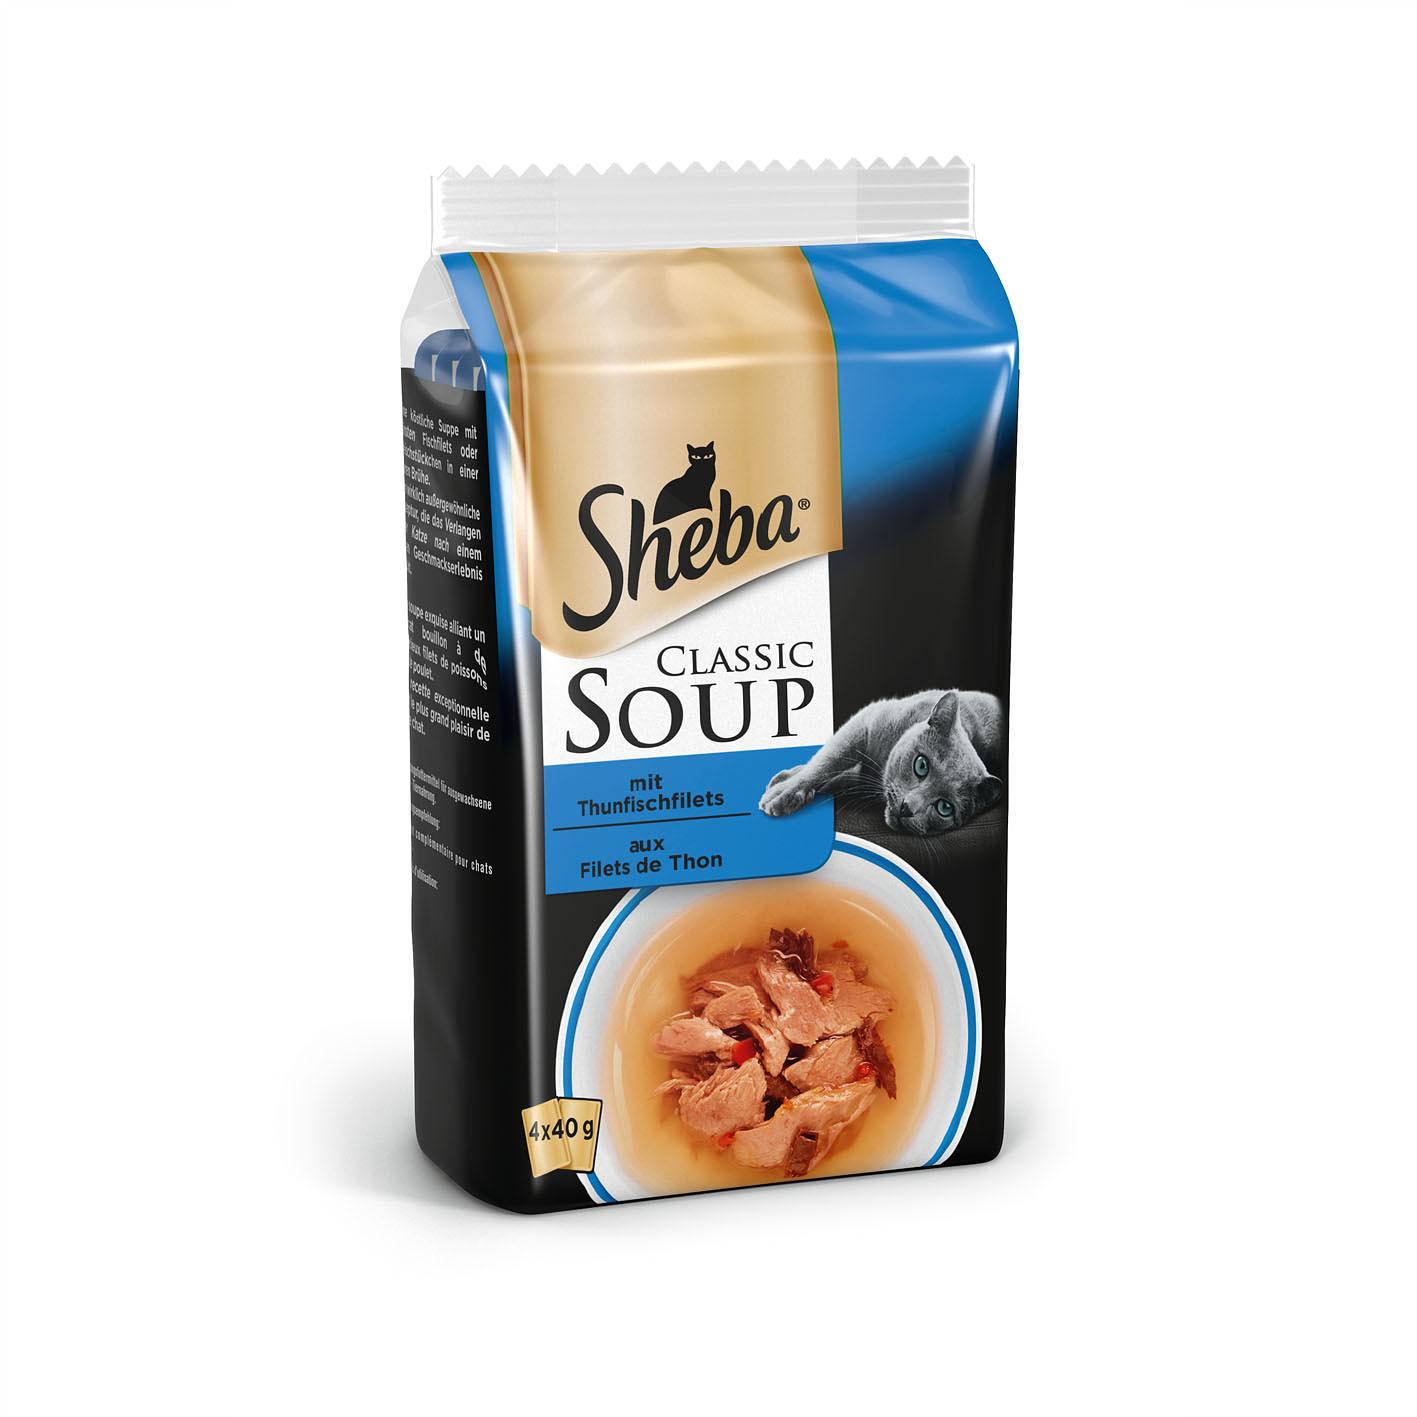 Sheba - Soupe Classic au thon - Nourriture pour Nourriture pour